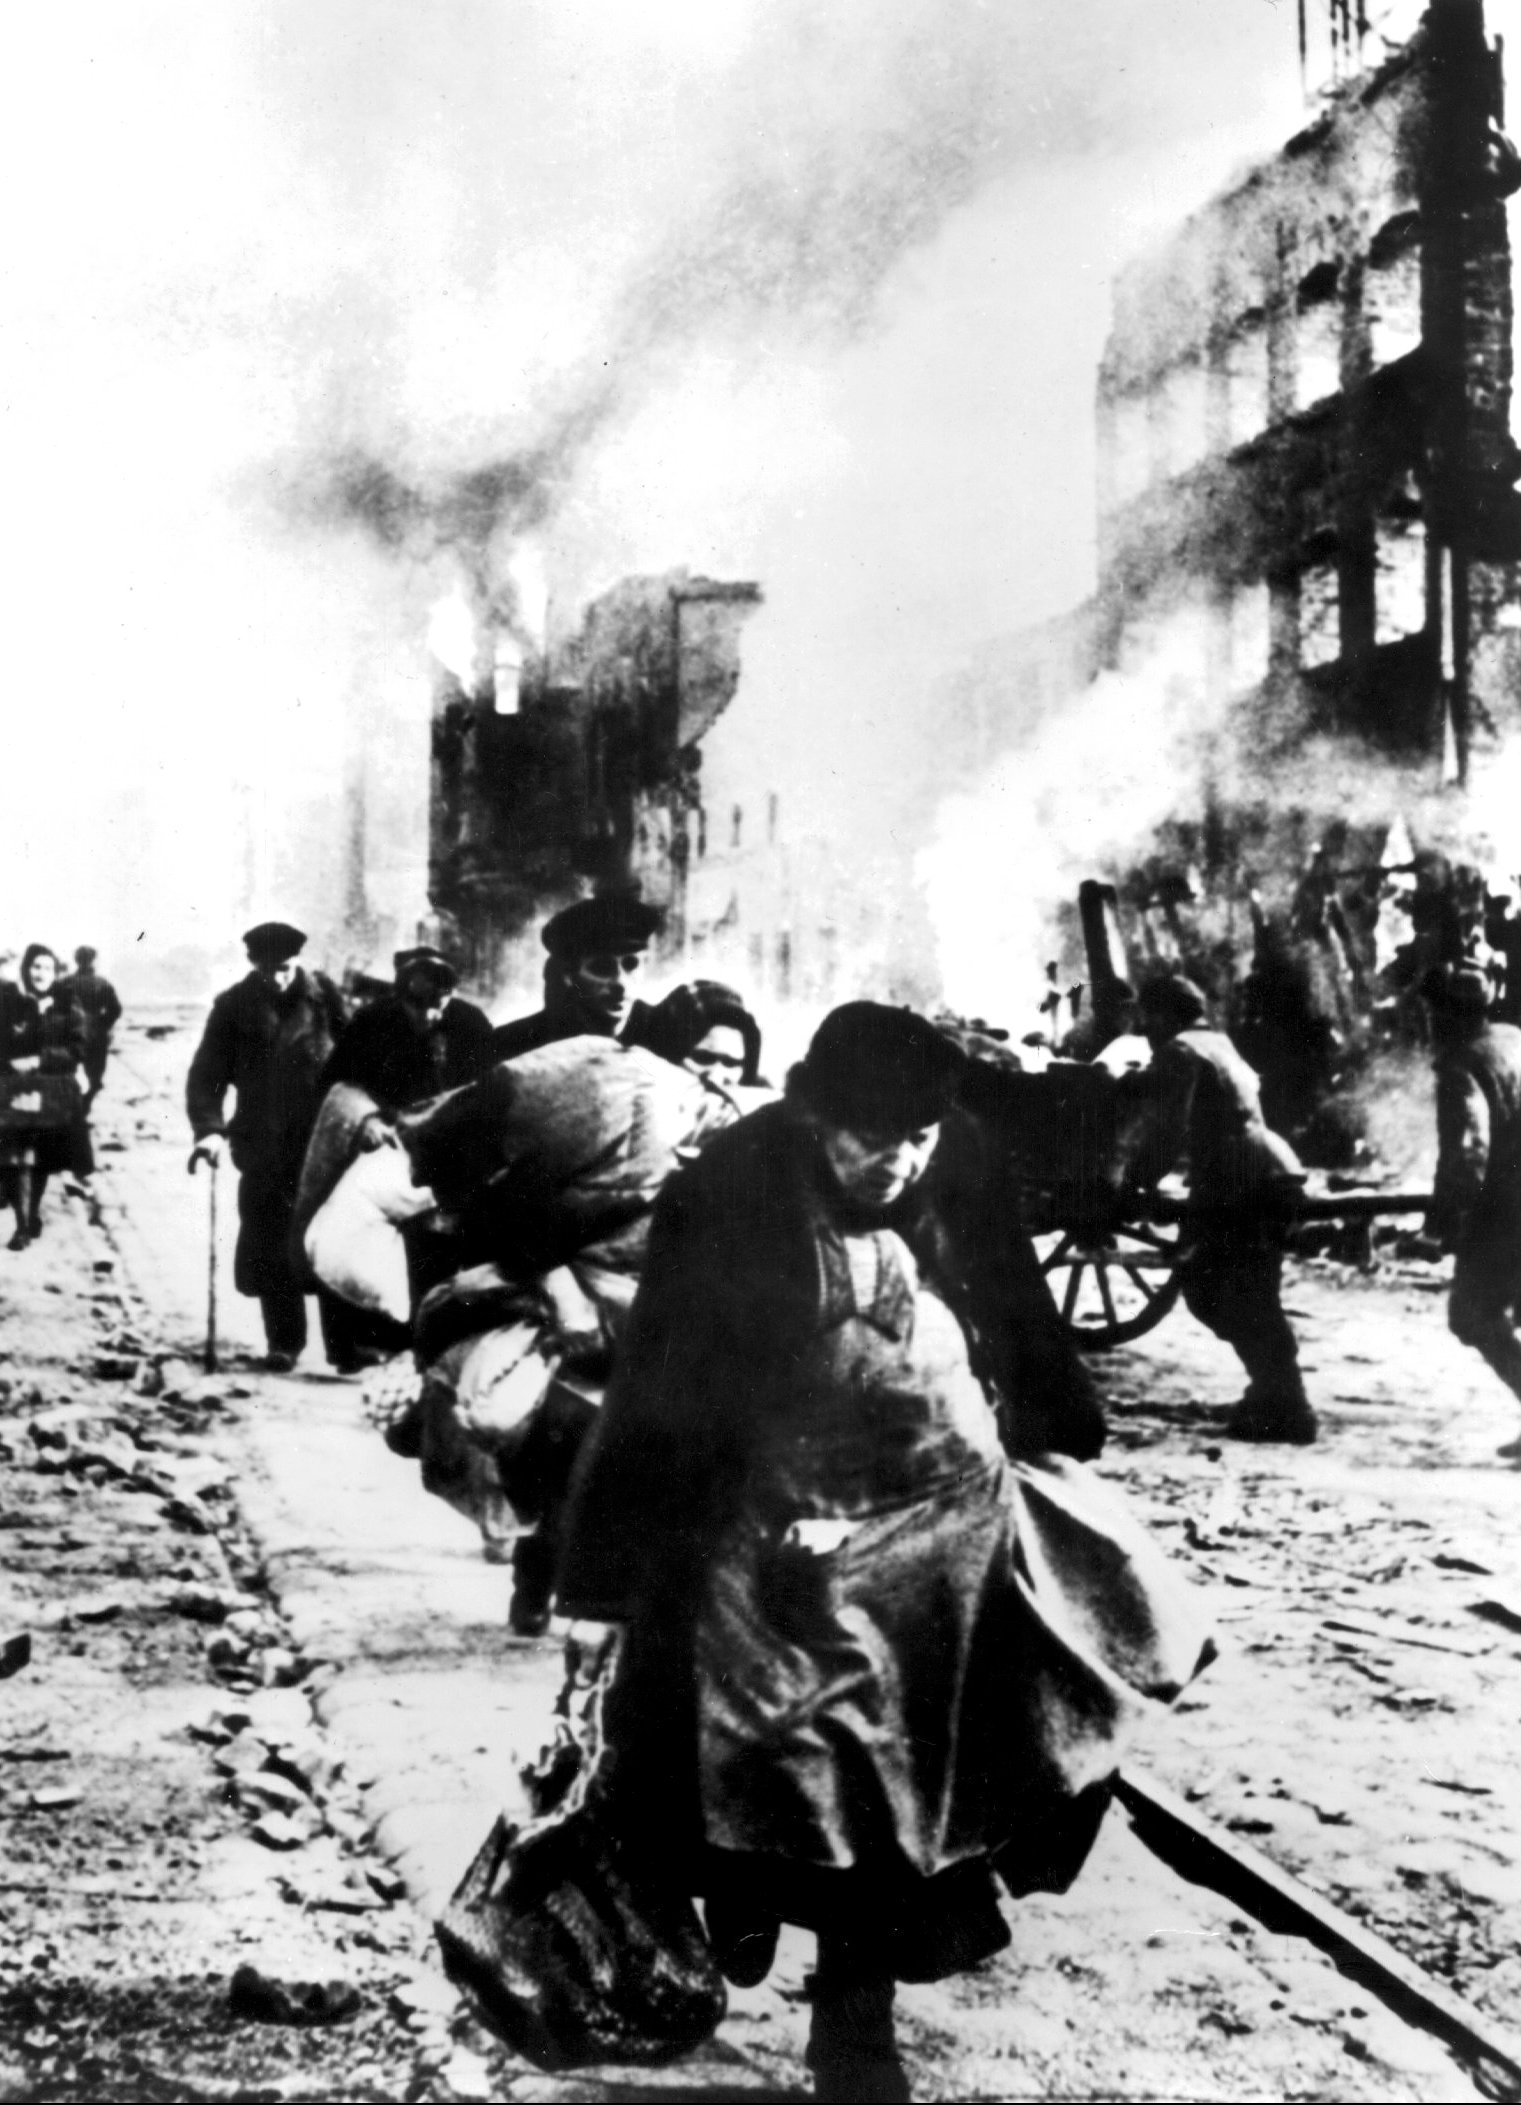  Staden Stalingrad intagen av trupper. Människor flyr med sina tillhörigheter.